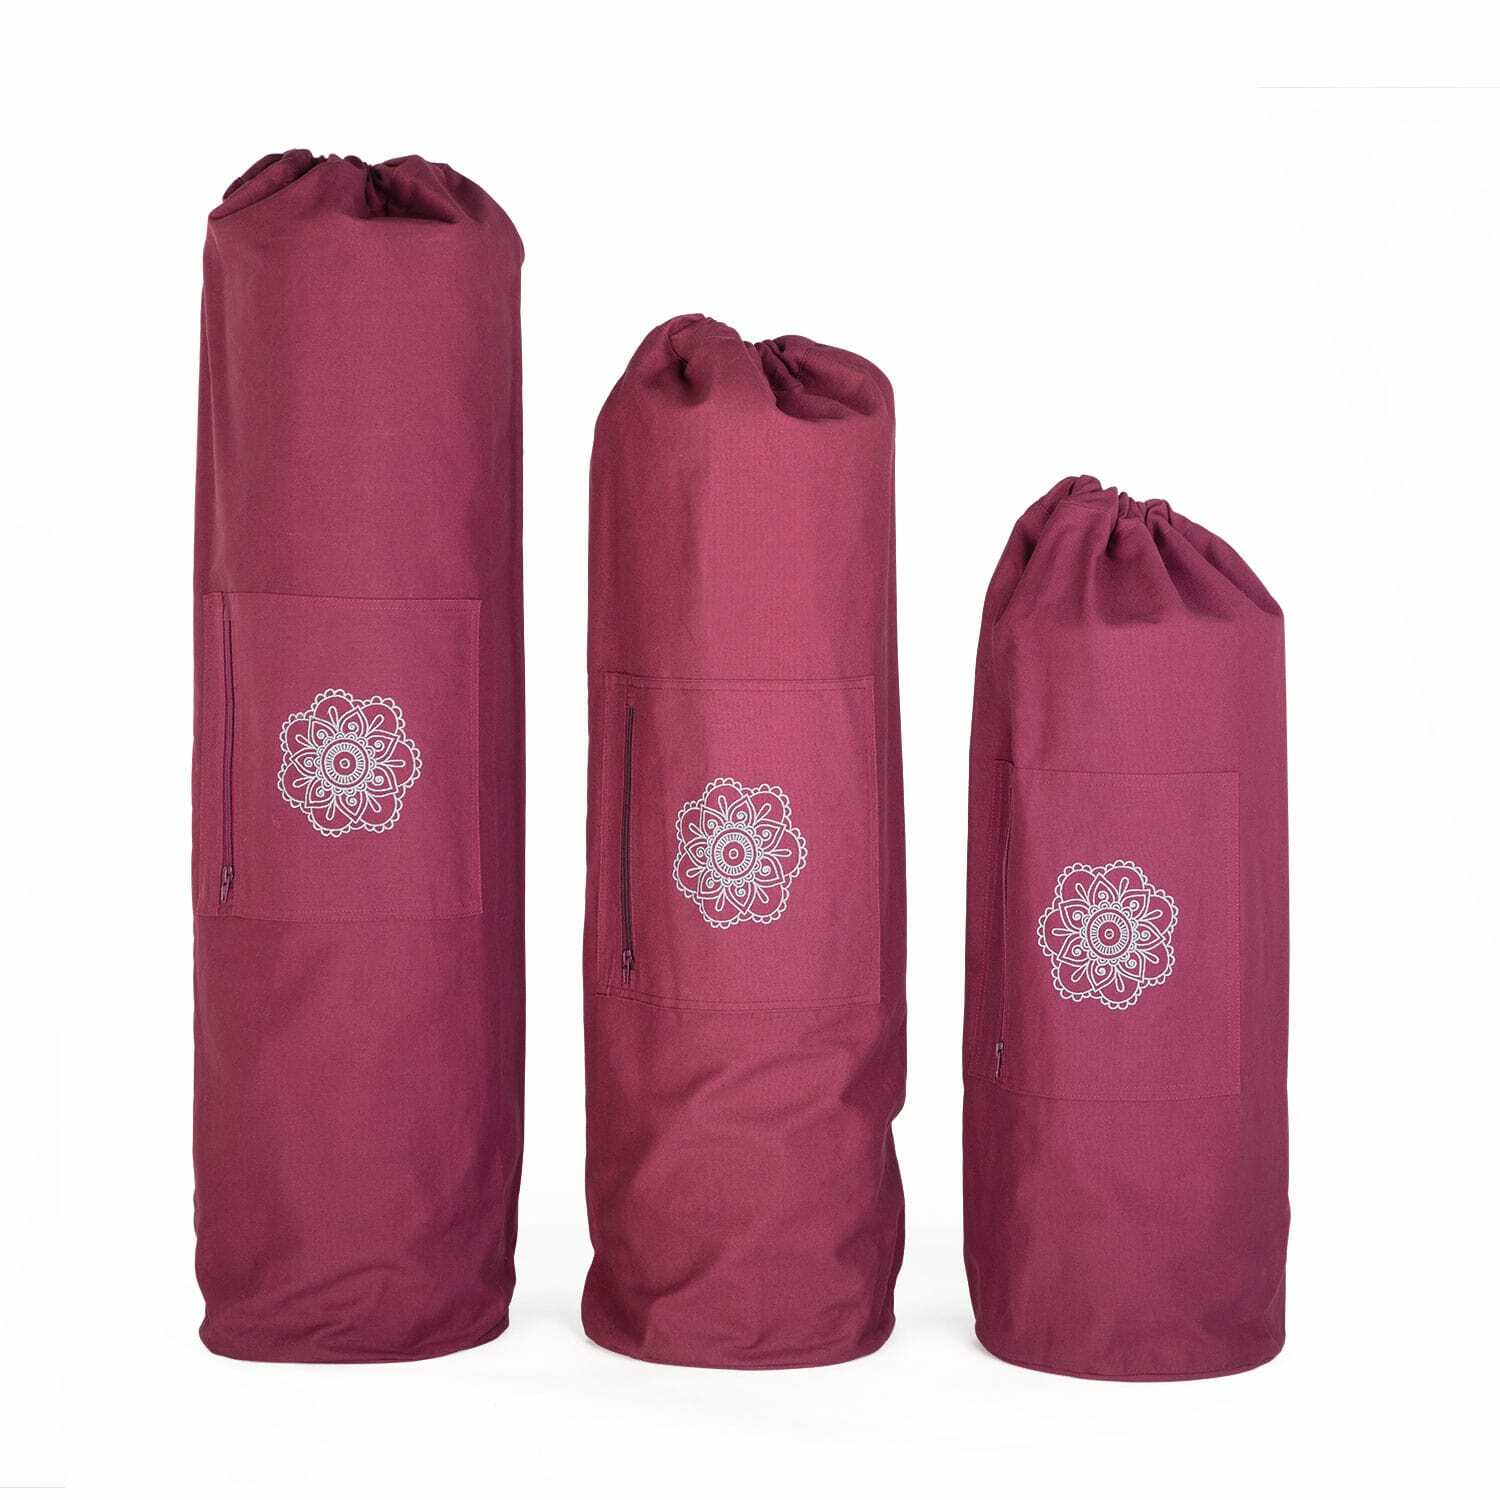 Personalised Yoga Tote Bag Moon and Sun , Yoga Mat Bag, Yoga Mat Pocke –  JimJamJoy